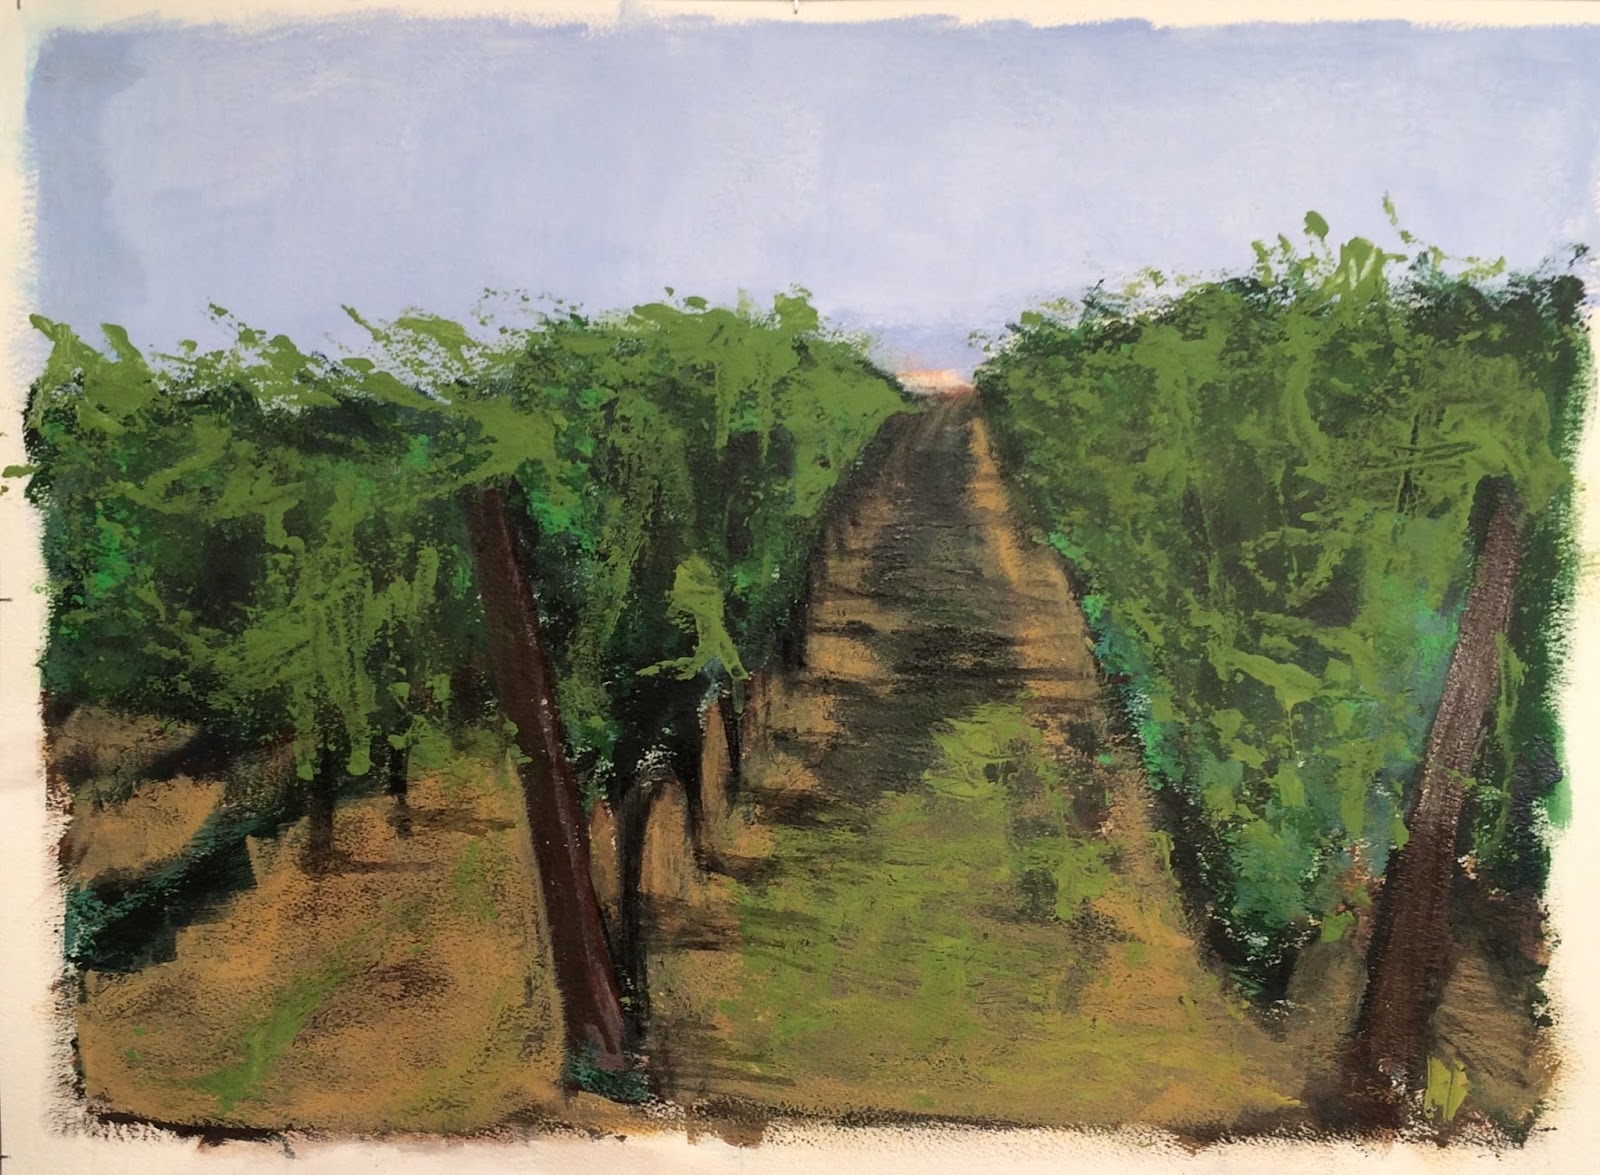 N°3013 - Vigne - Acrylique et pigments sur papier - 58 x 76 cm - 9 août 2016